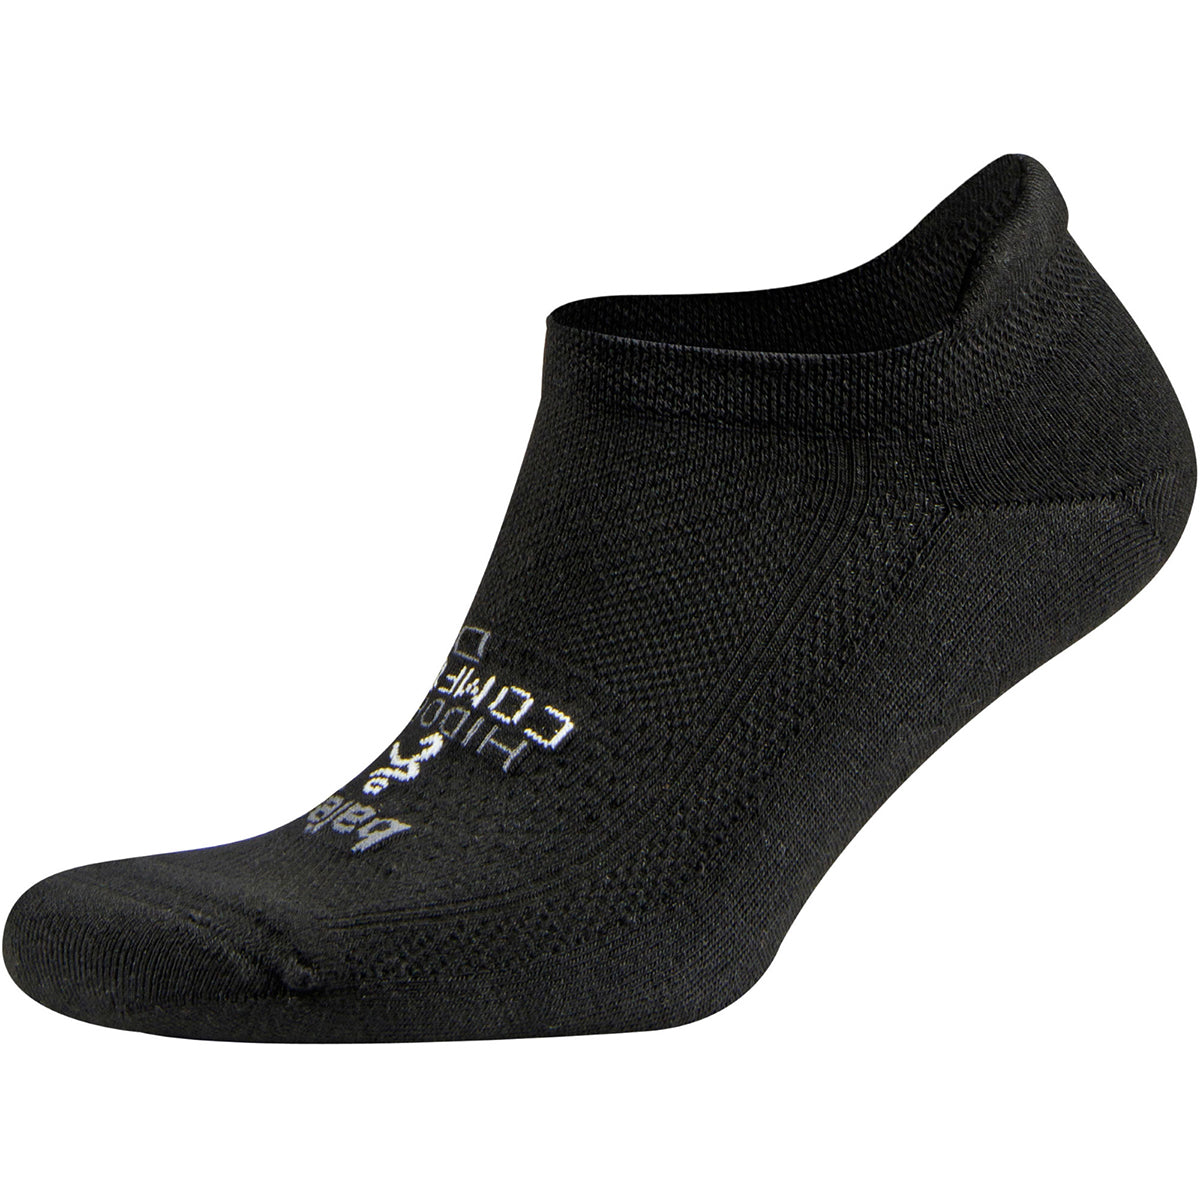 Balega Hidden Comfort Sole Cushioning Running Socks - Black Balega